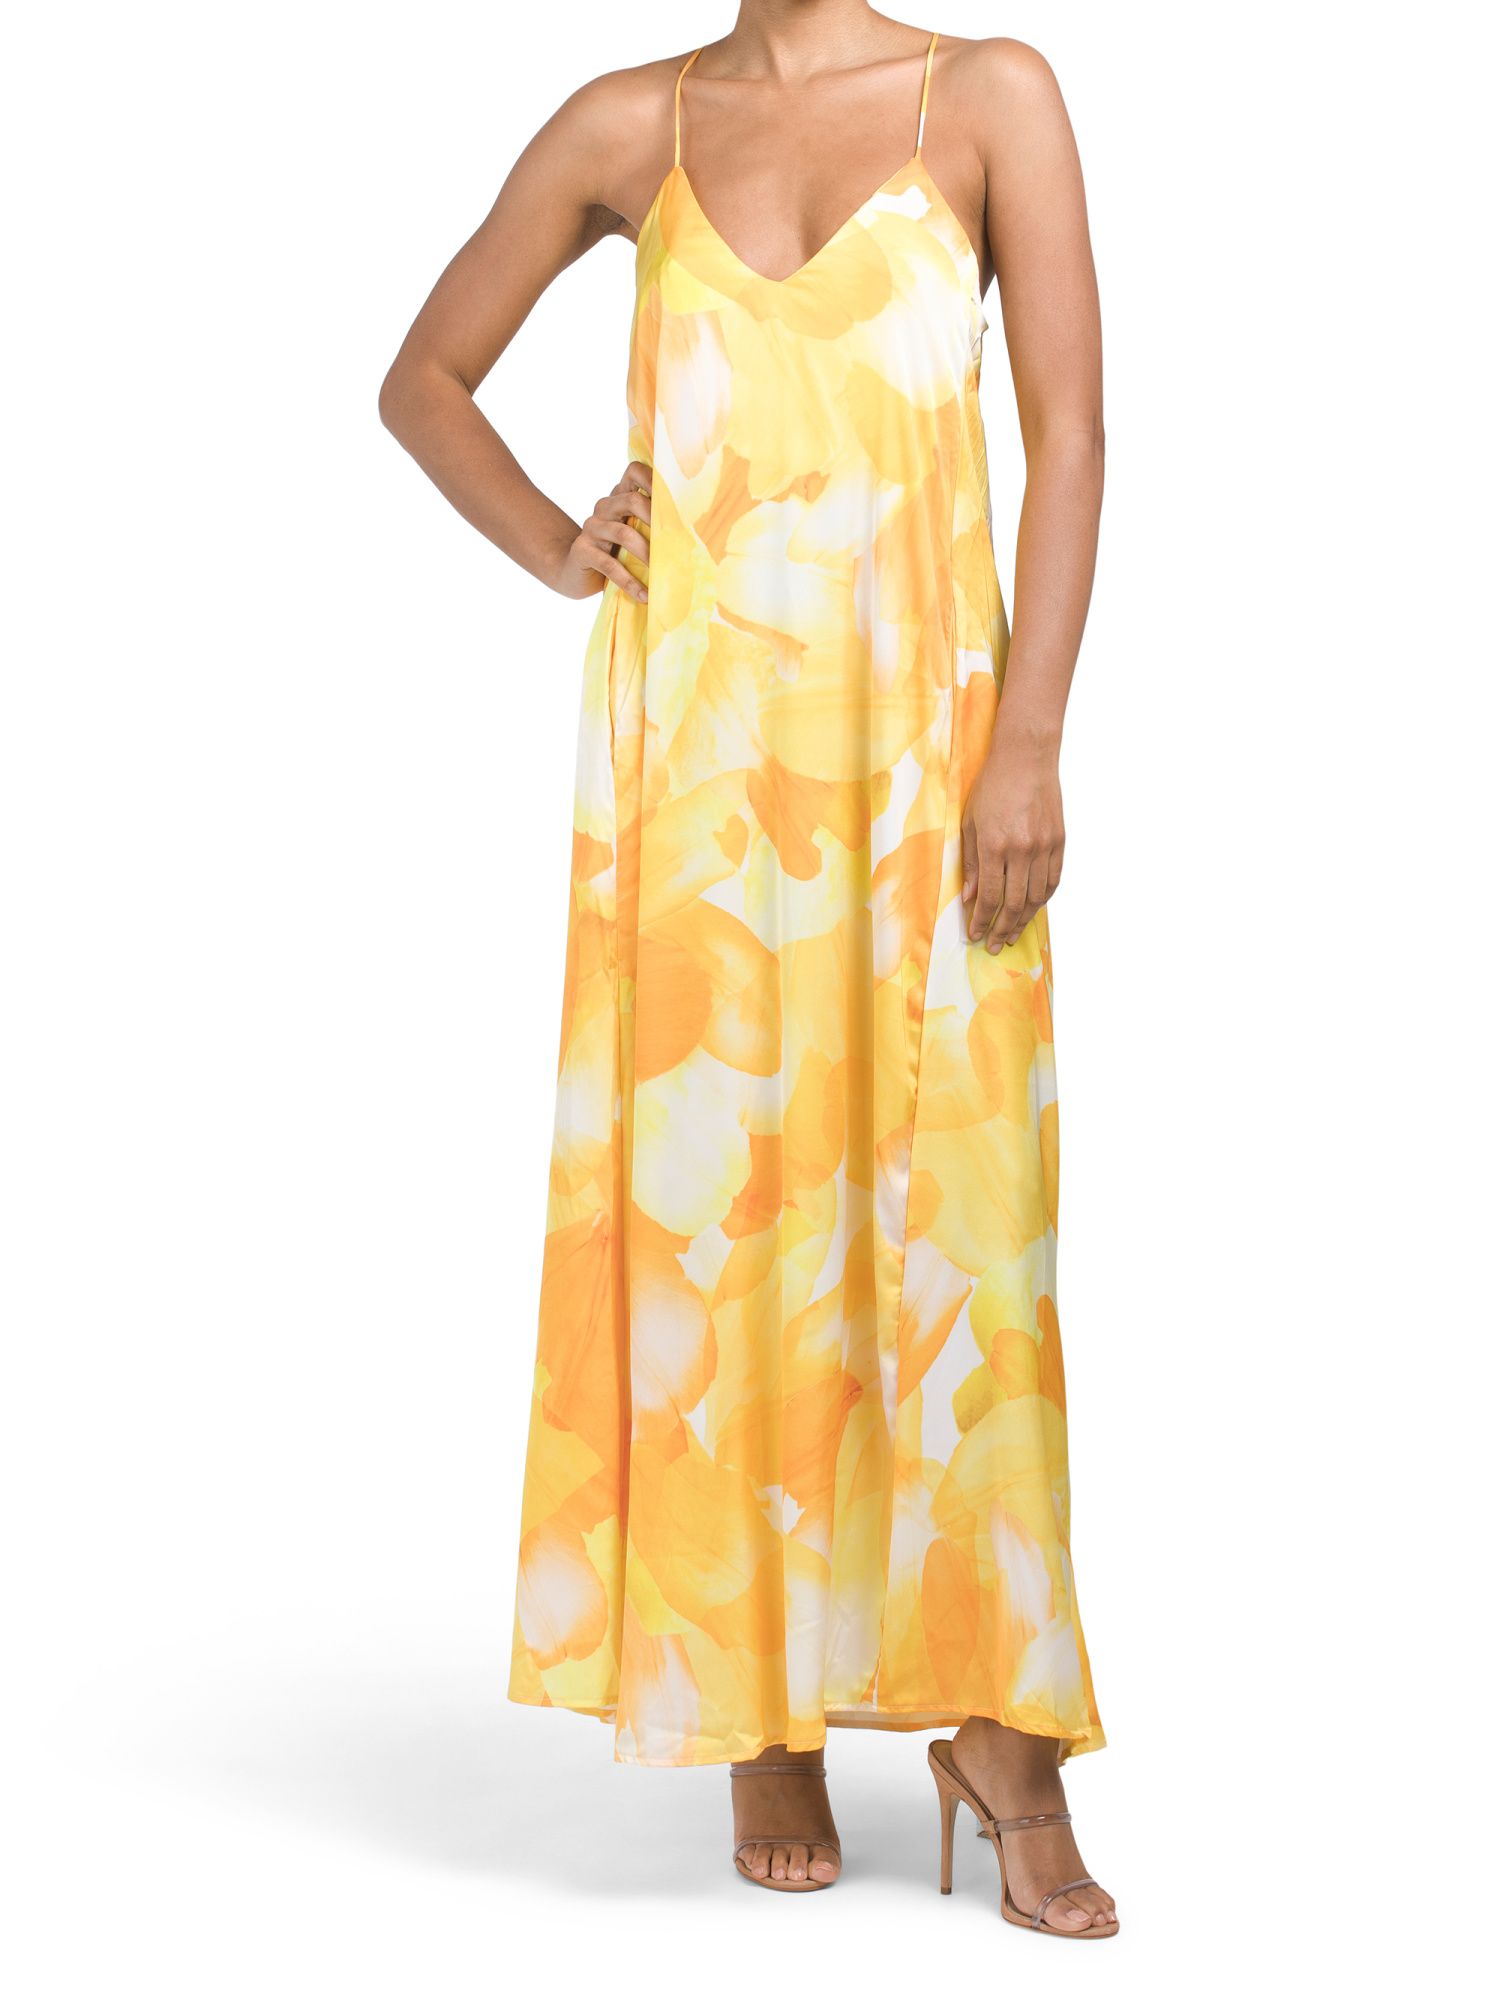 Floral Print Slip Dress | TJ Maxx